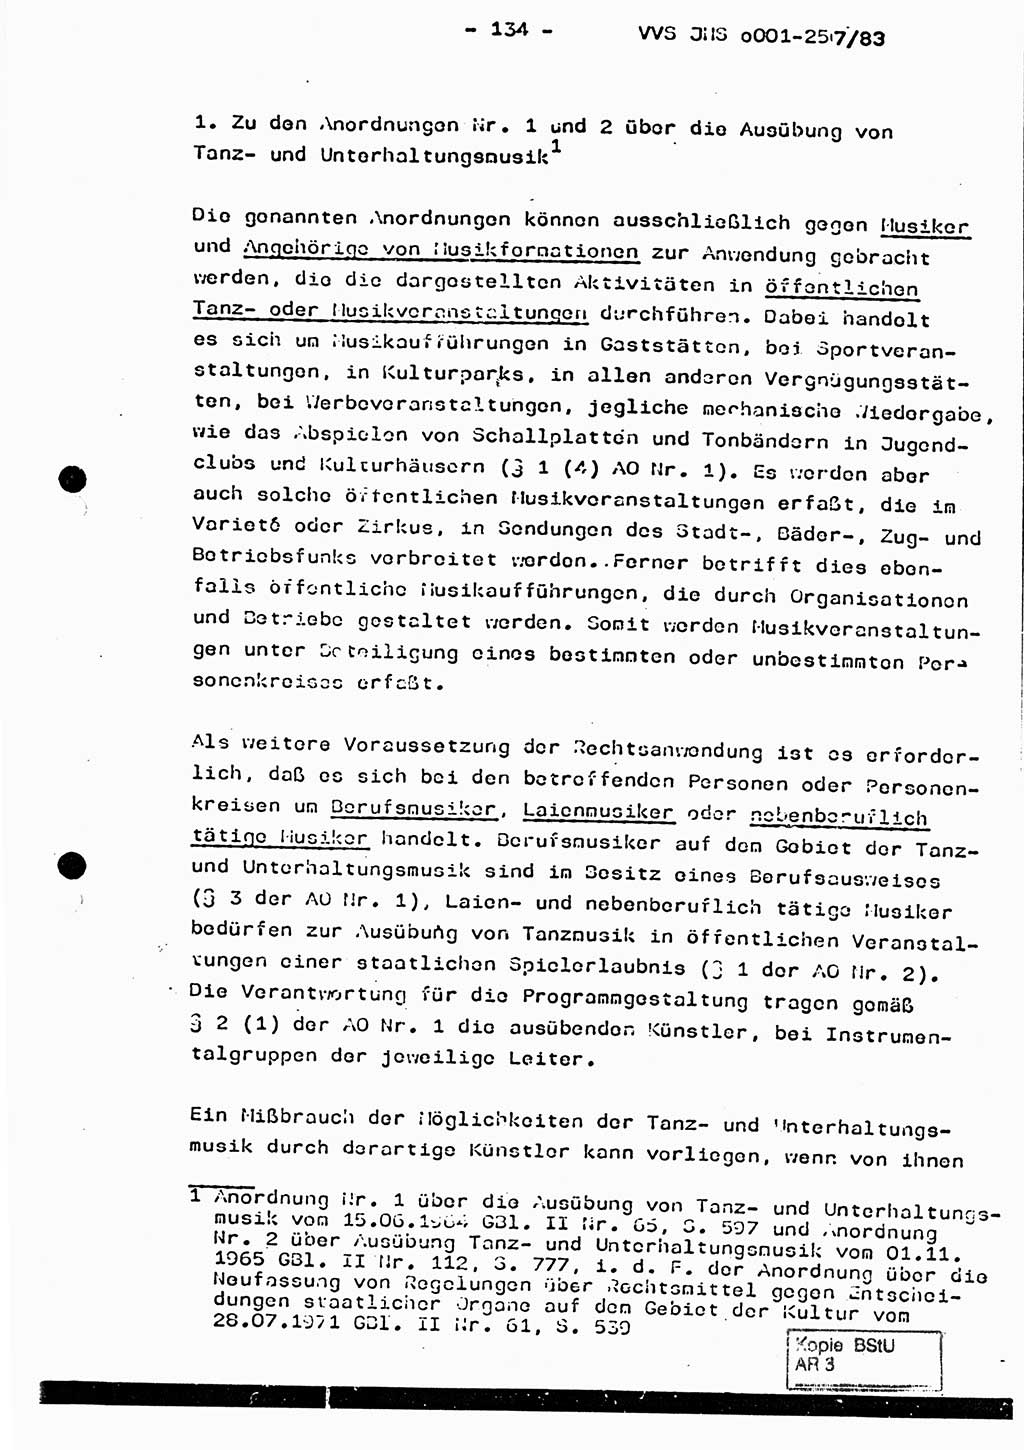 Dissertation, Oberst Helmut Lubas (BV Mdg.), Oberstleutnant Manfred Eschberger (HA IX), Oberleutnant Hans-Jürgen Ludwig (JHS), Ministerium für Staatssicherheit (MfS) [Deutsche Demokratische Republik (DDR)], Juristische Hochschule (JHS), Vertrauliche Verschlußsache (VVS) o001-257/83, Potsdam 1983, Seite 134 (Diss. MfS DDR JHS VVS o001-257/83 1983, S. 134)